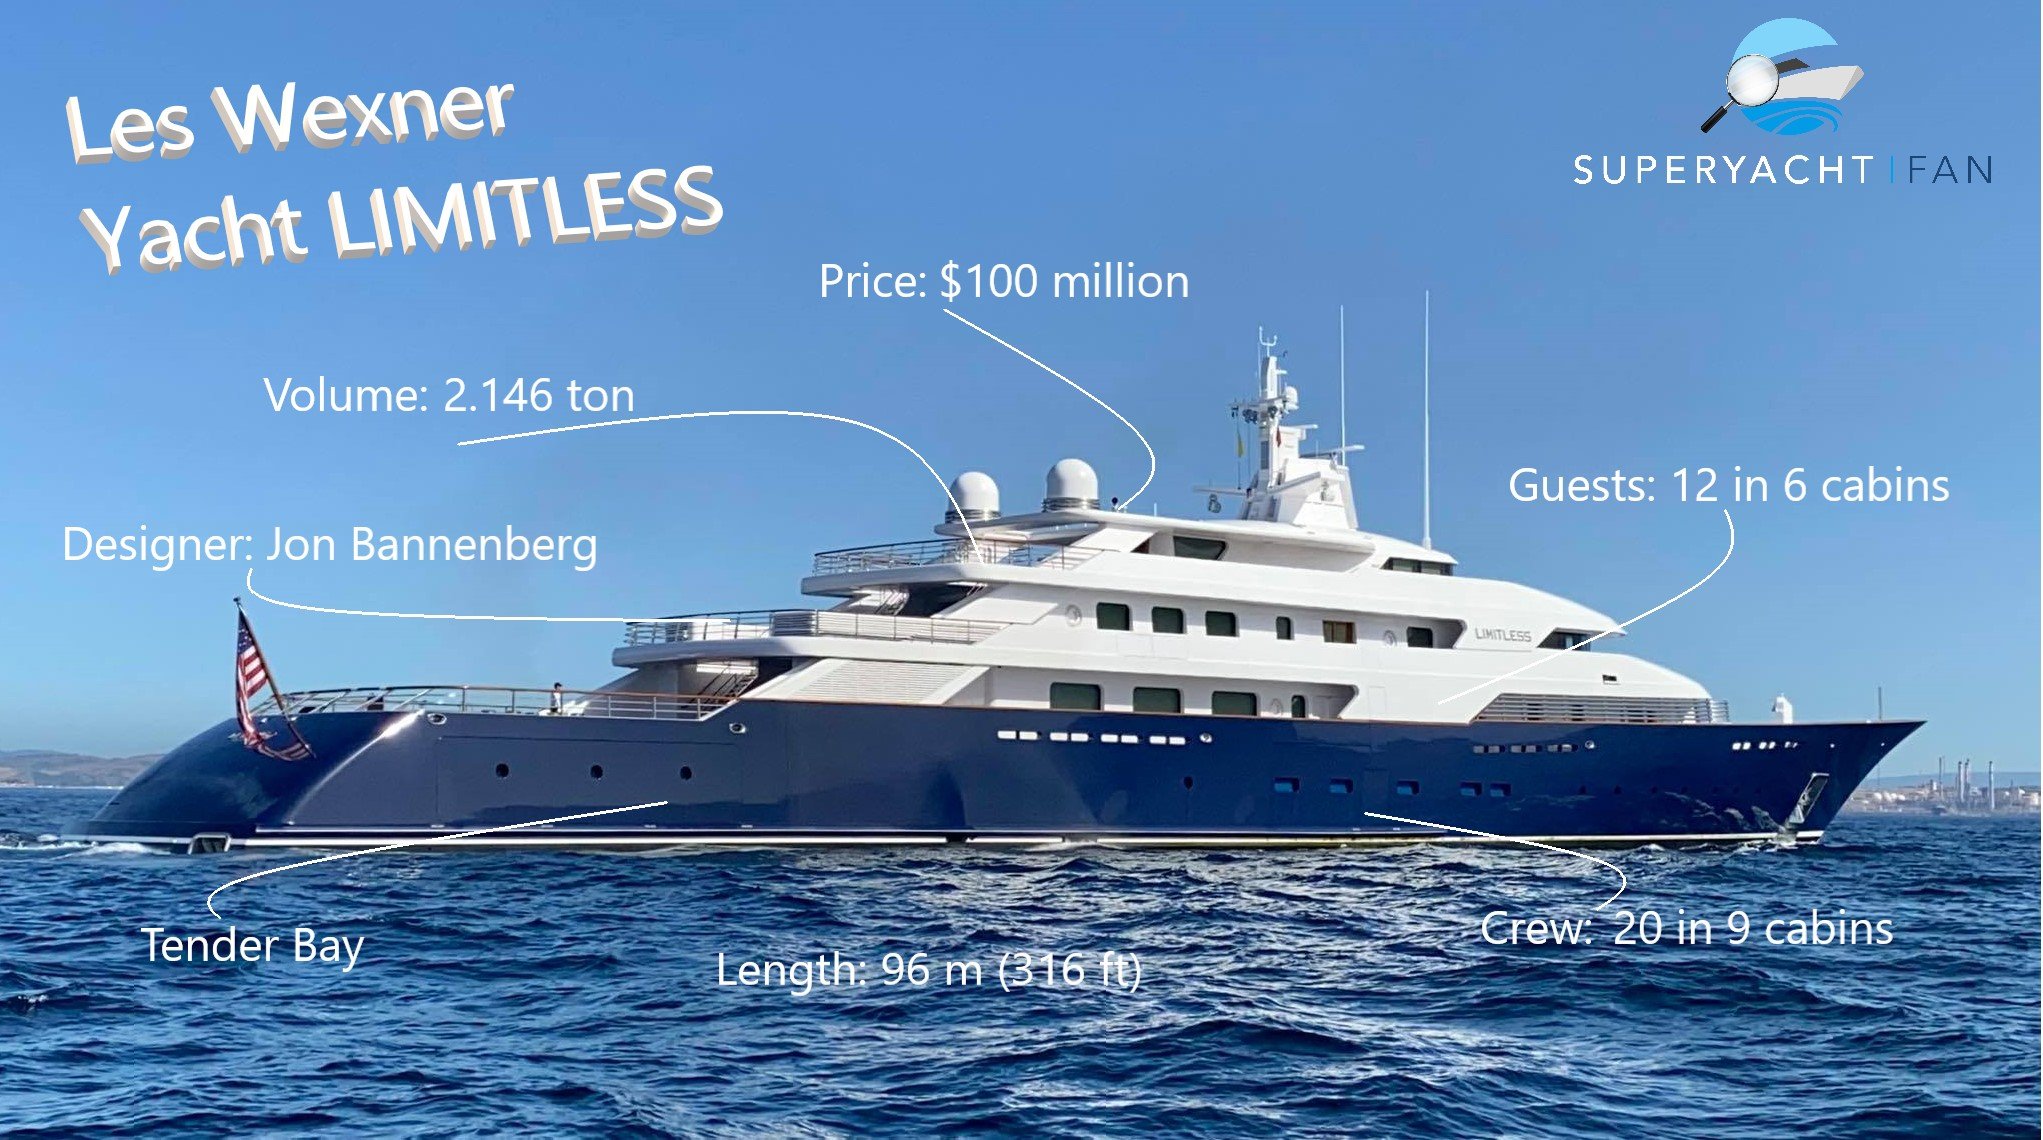 Lex Wexner Yacht SANS LIMITES